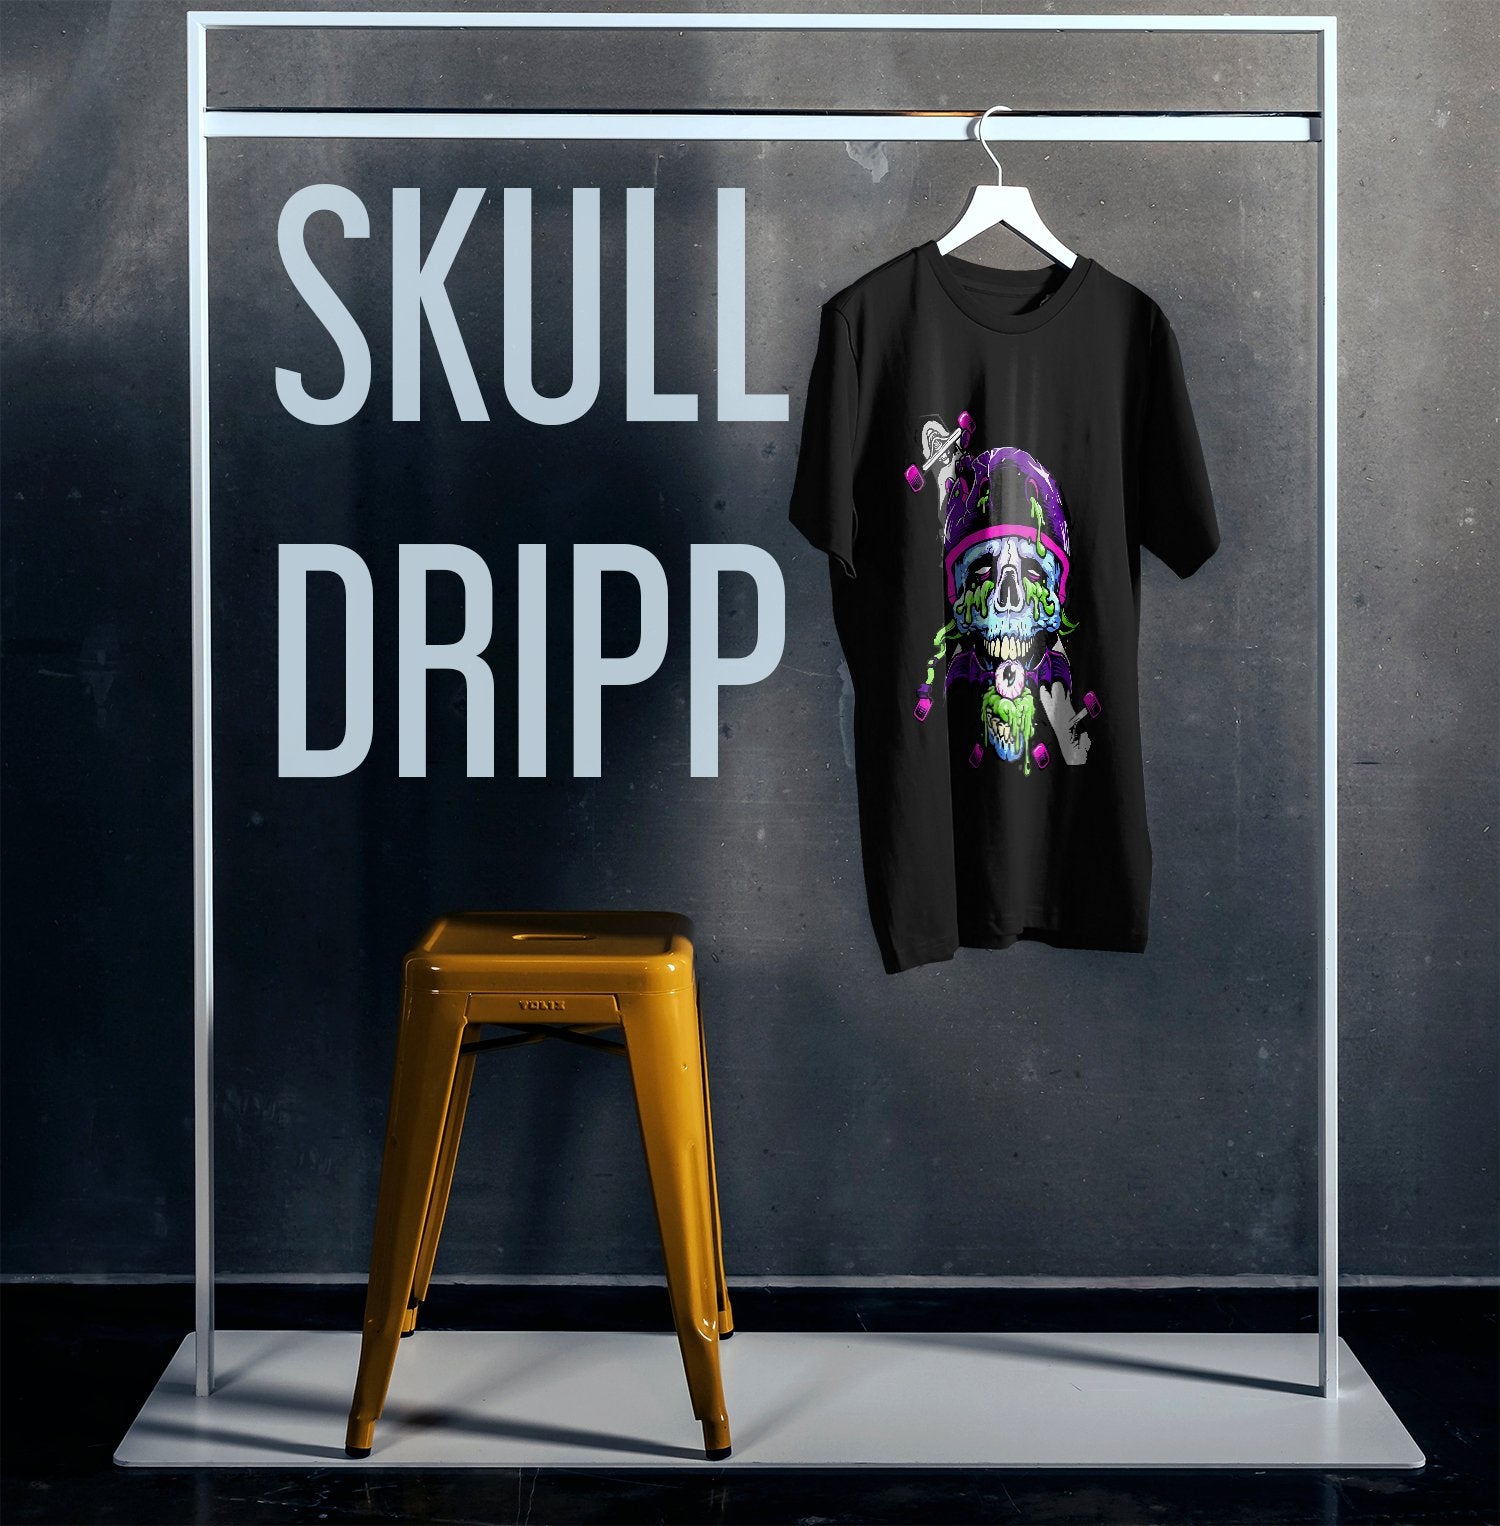 Skull Board - Trippy - Gizmoz.in